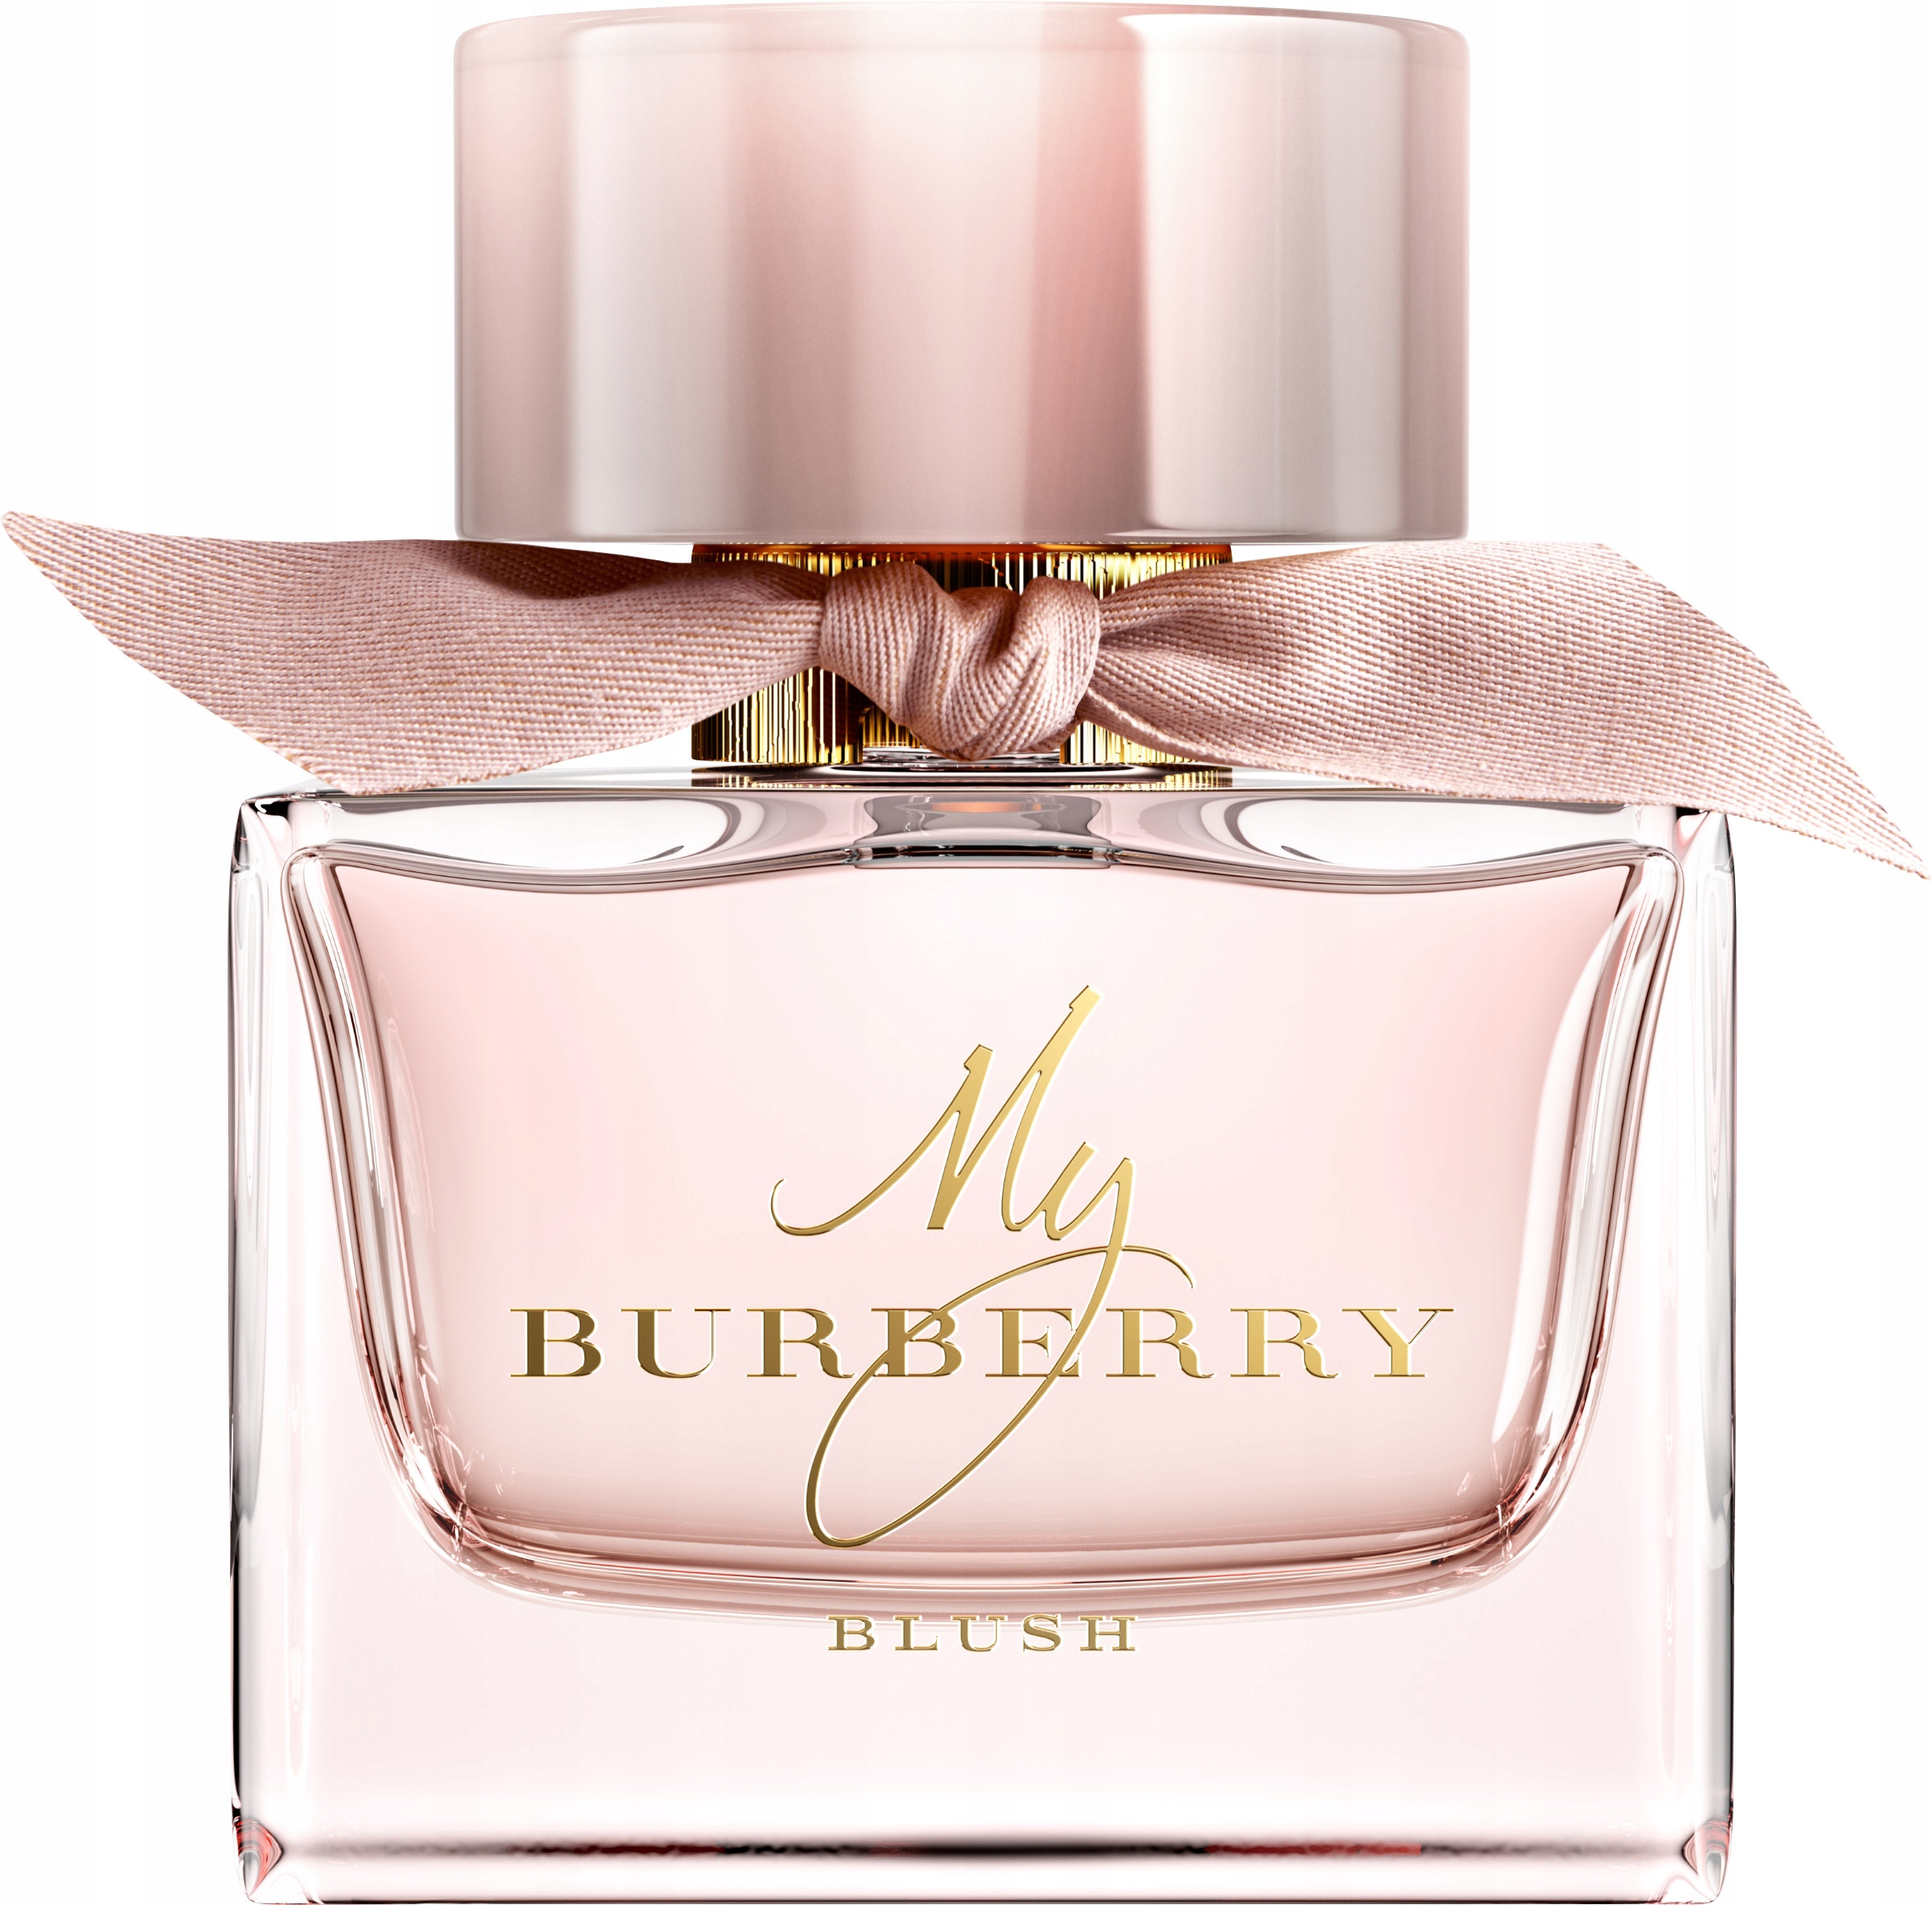 Burberry My Burberry Blush parfumovaná voda sprej 90ml EDP